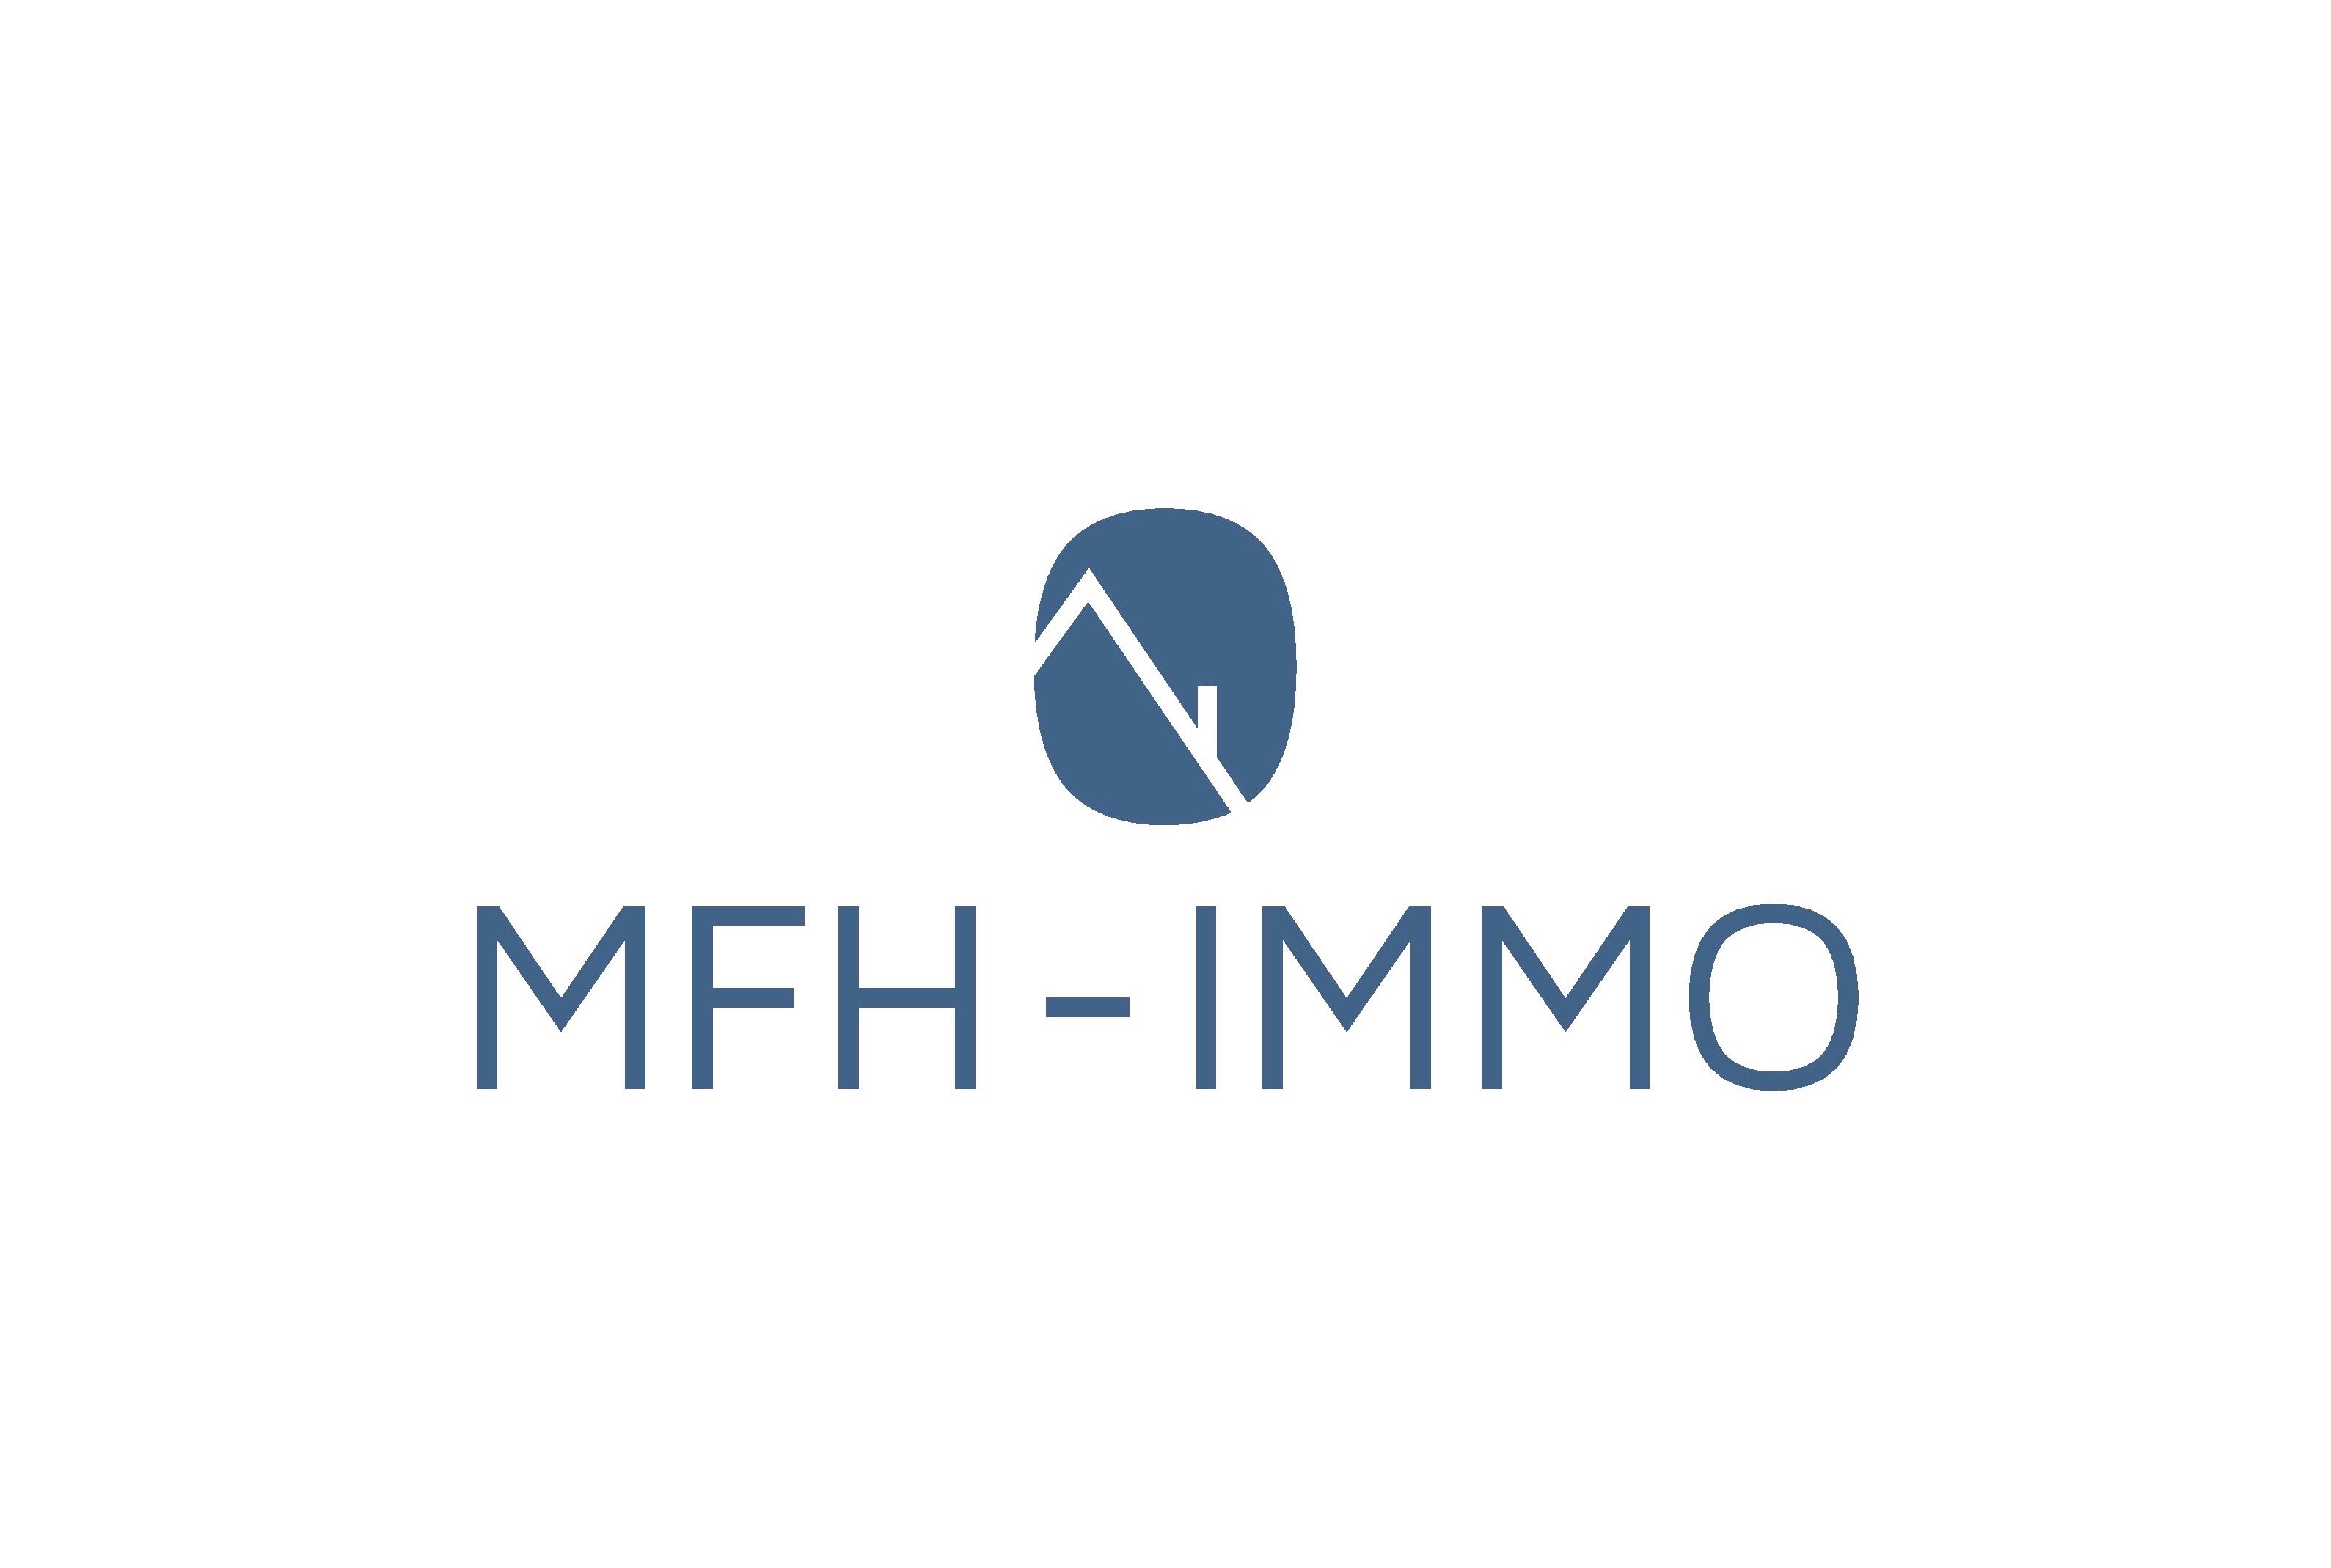 MFH-IMMO in Berlin